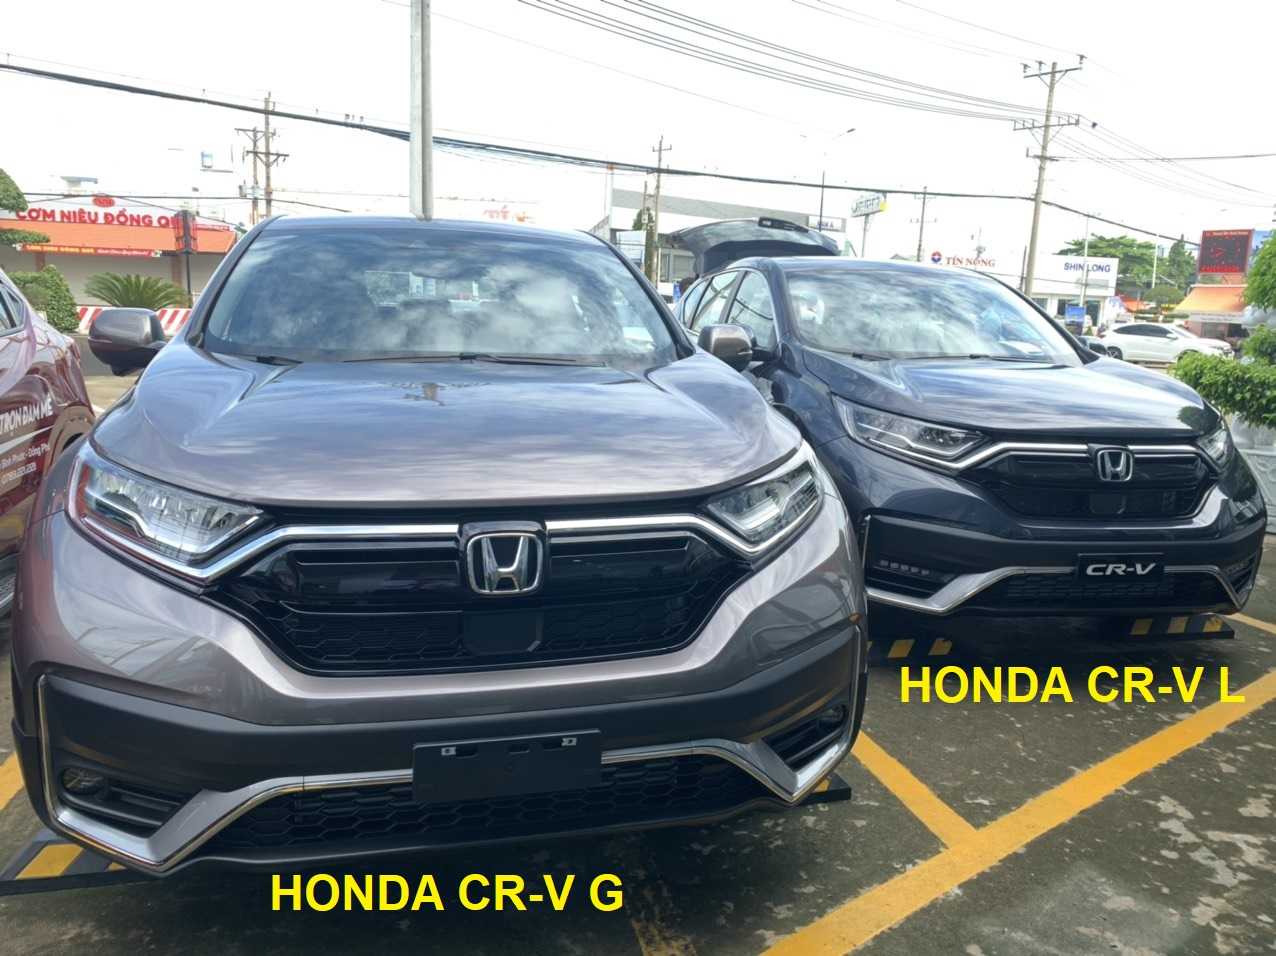 Điểm khác nhau giữa Honda CR-V G và Honda CR-V L